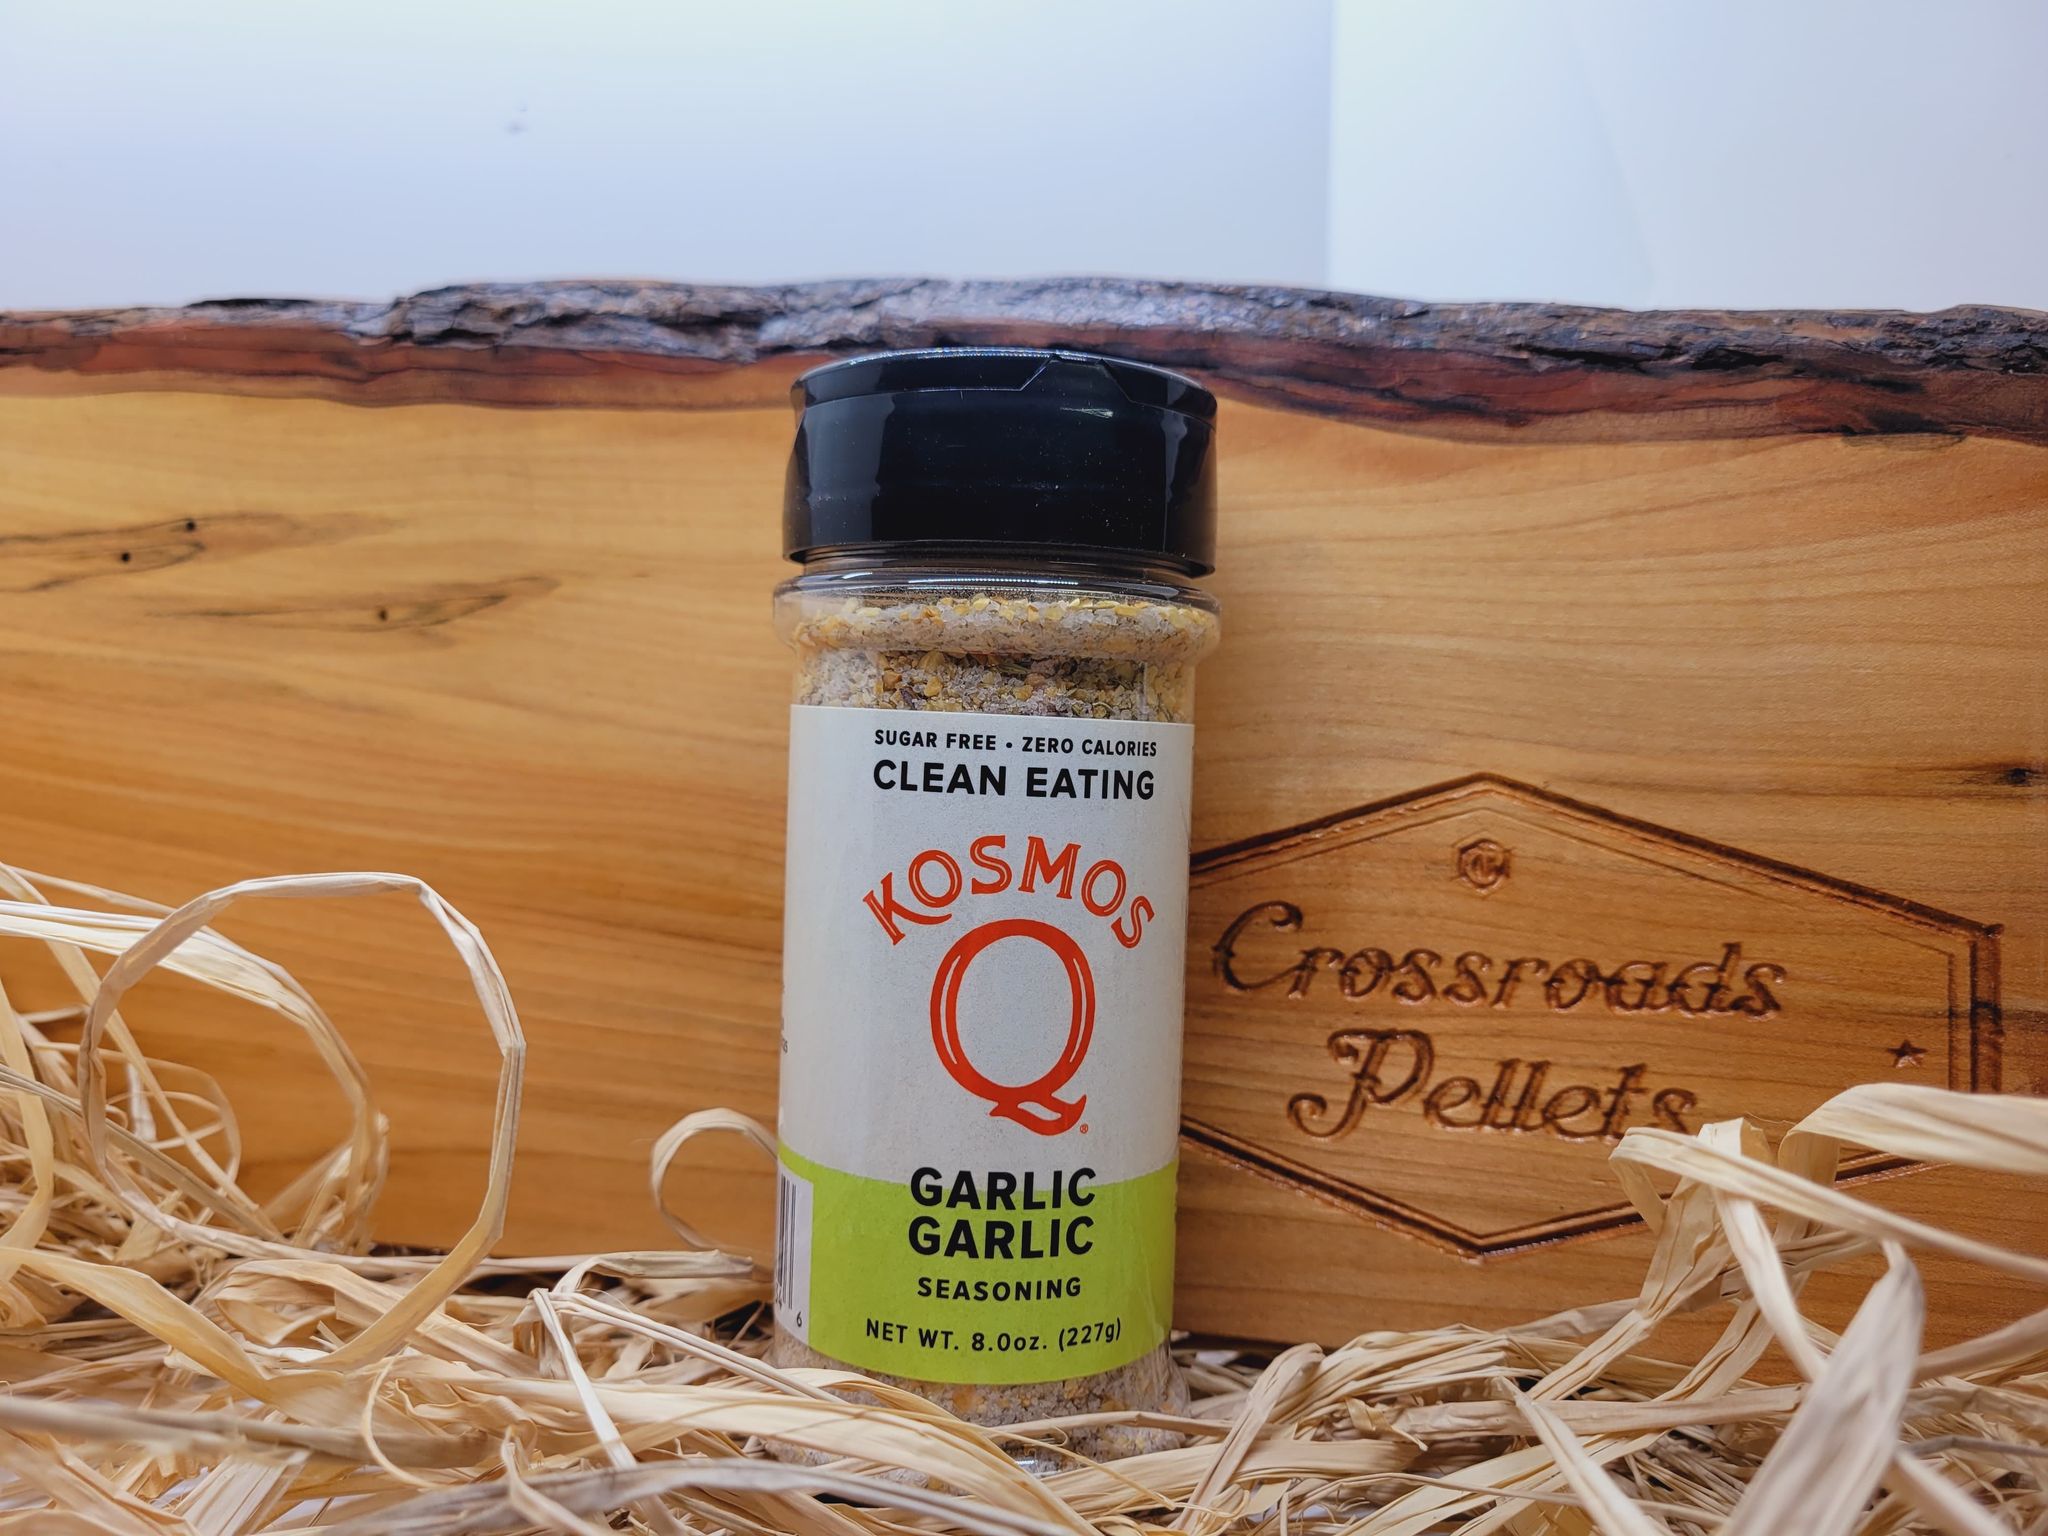  Kosmos Q The Best Garlic Jalapeno Rub - Garlic